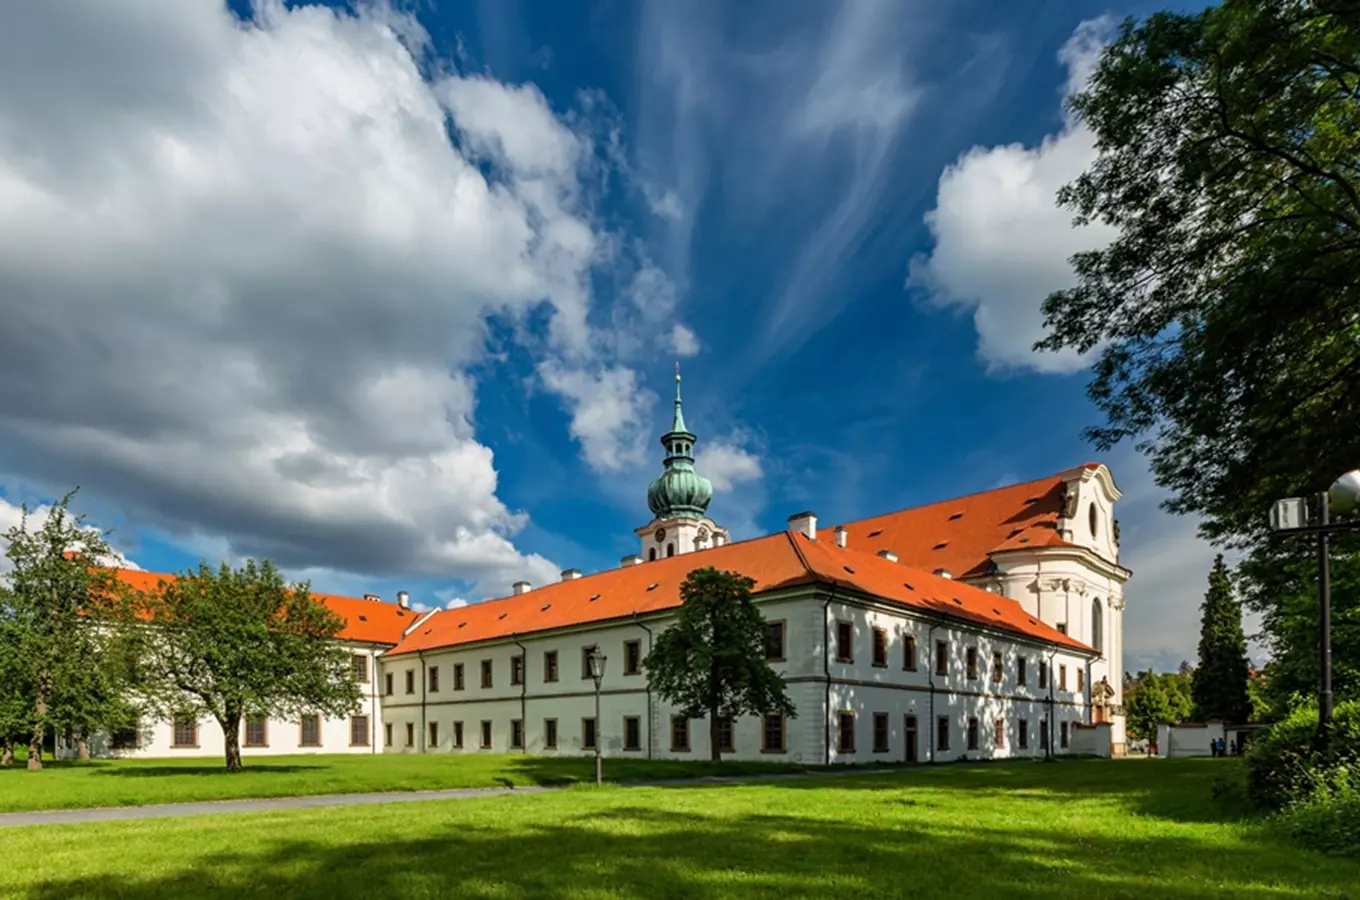 #světovéČesko a Břevnovský klášterní pivovar sv. Vojtěcha: jeden z nejstarších pivovarů na světě